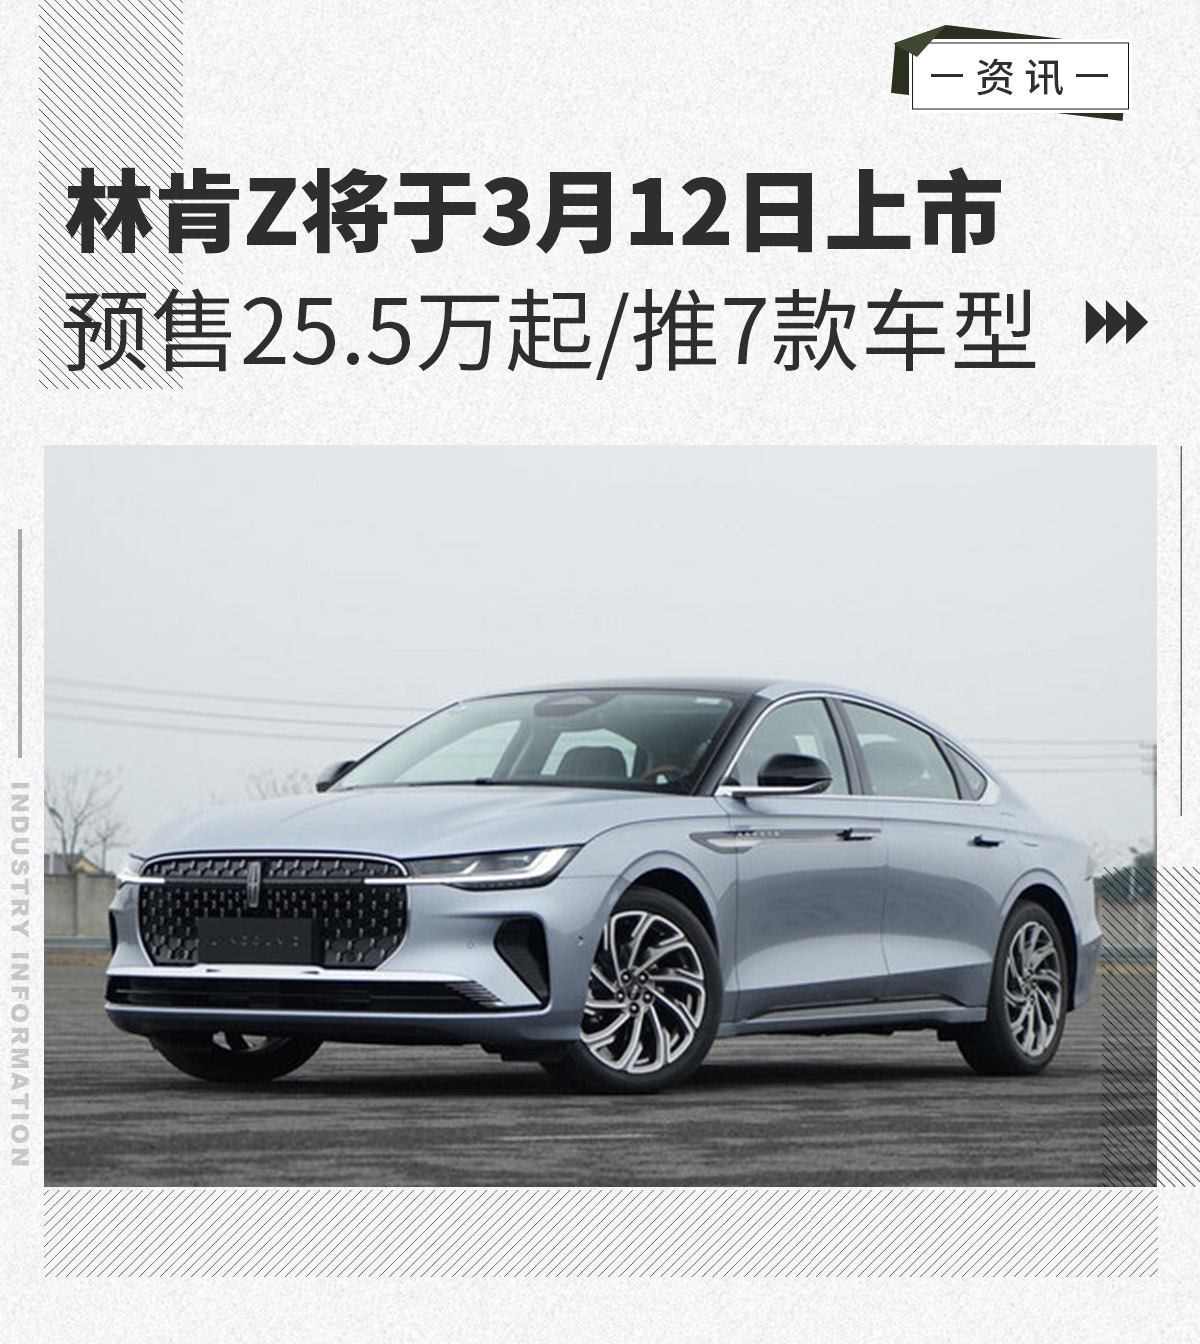 3月12日林肯Z将上市 预售25.5万起/推7款车型